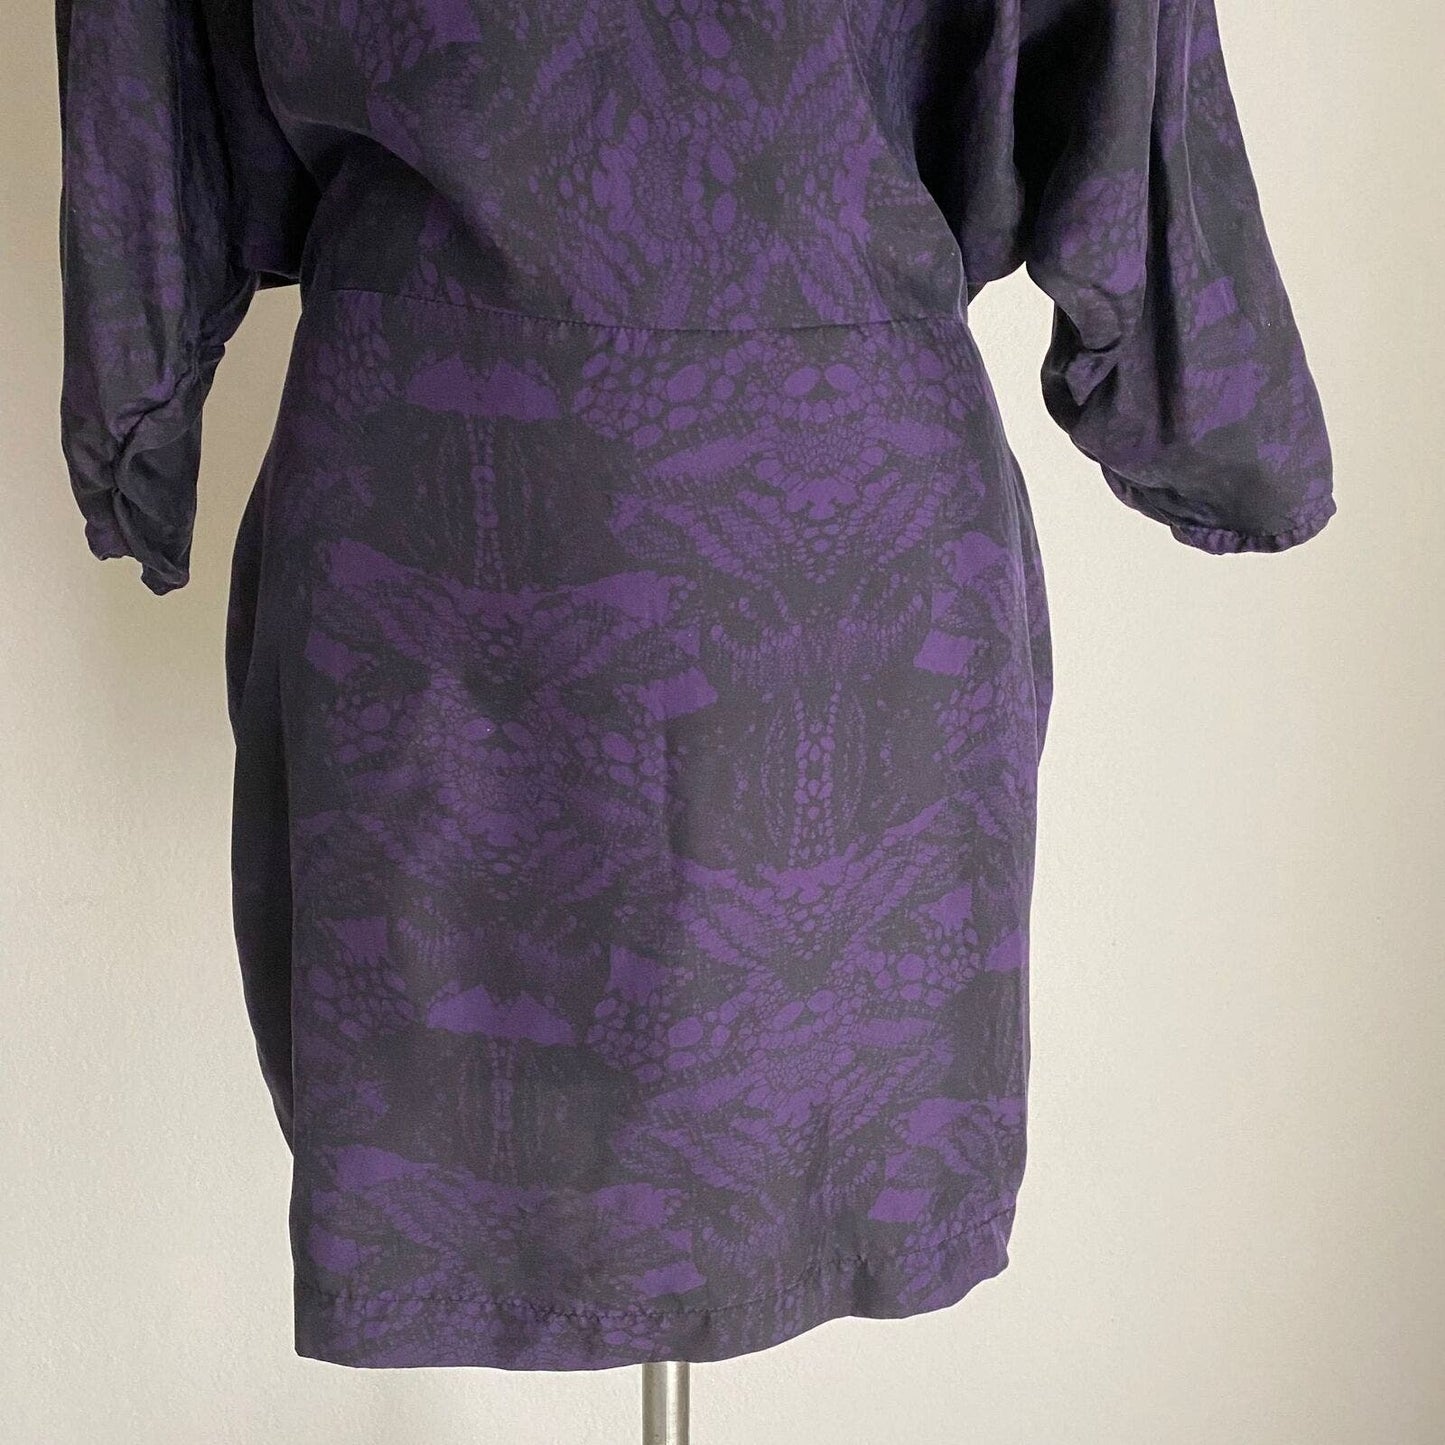 Dolce Vita sz M 100% silk back cutout mini dress